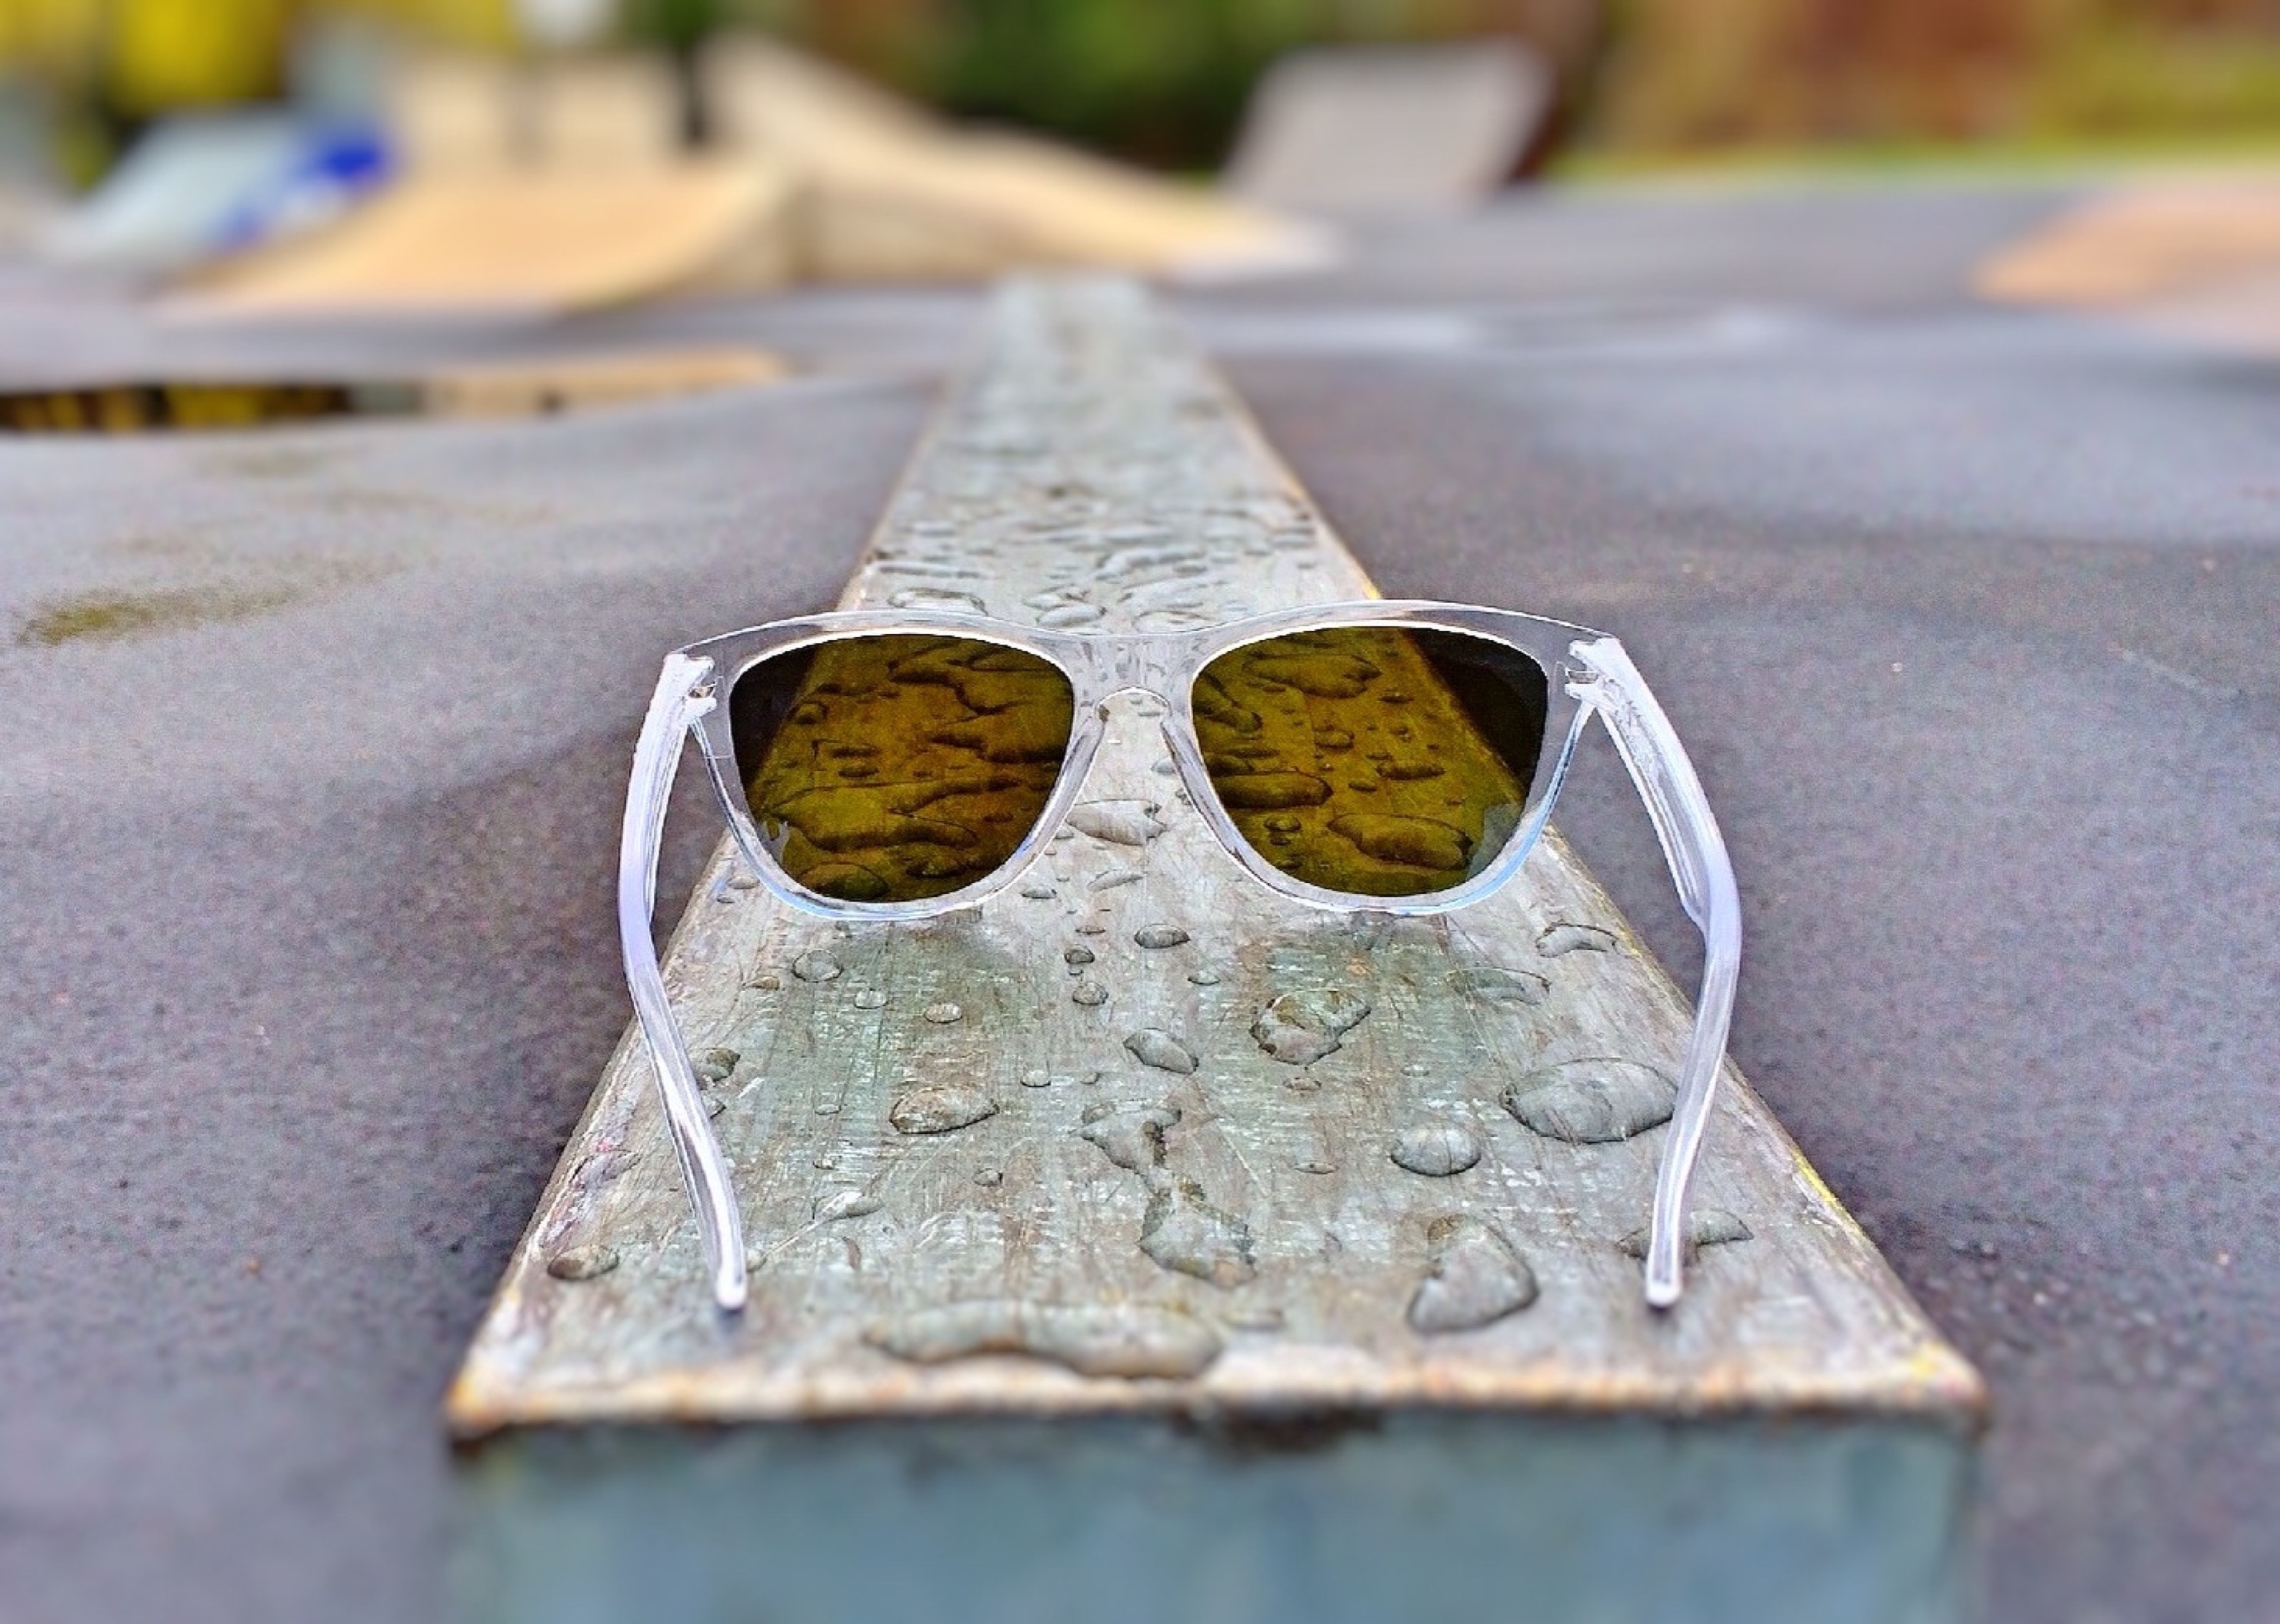 white framed sunglasses